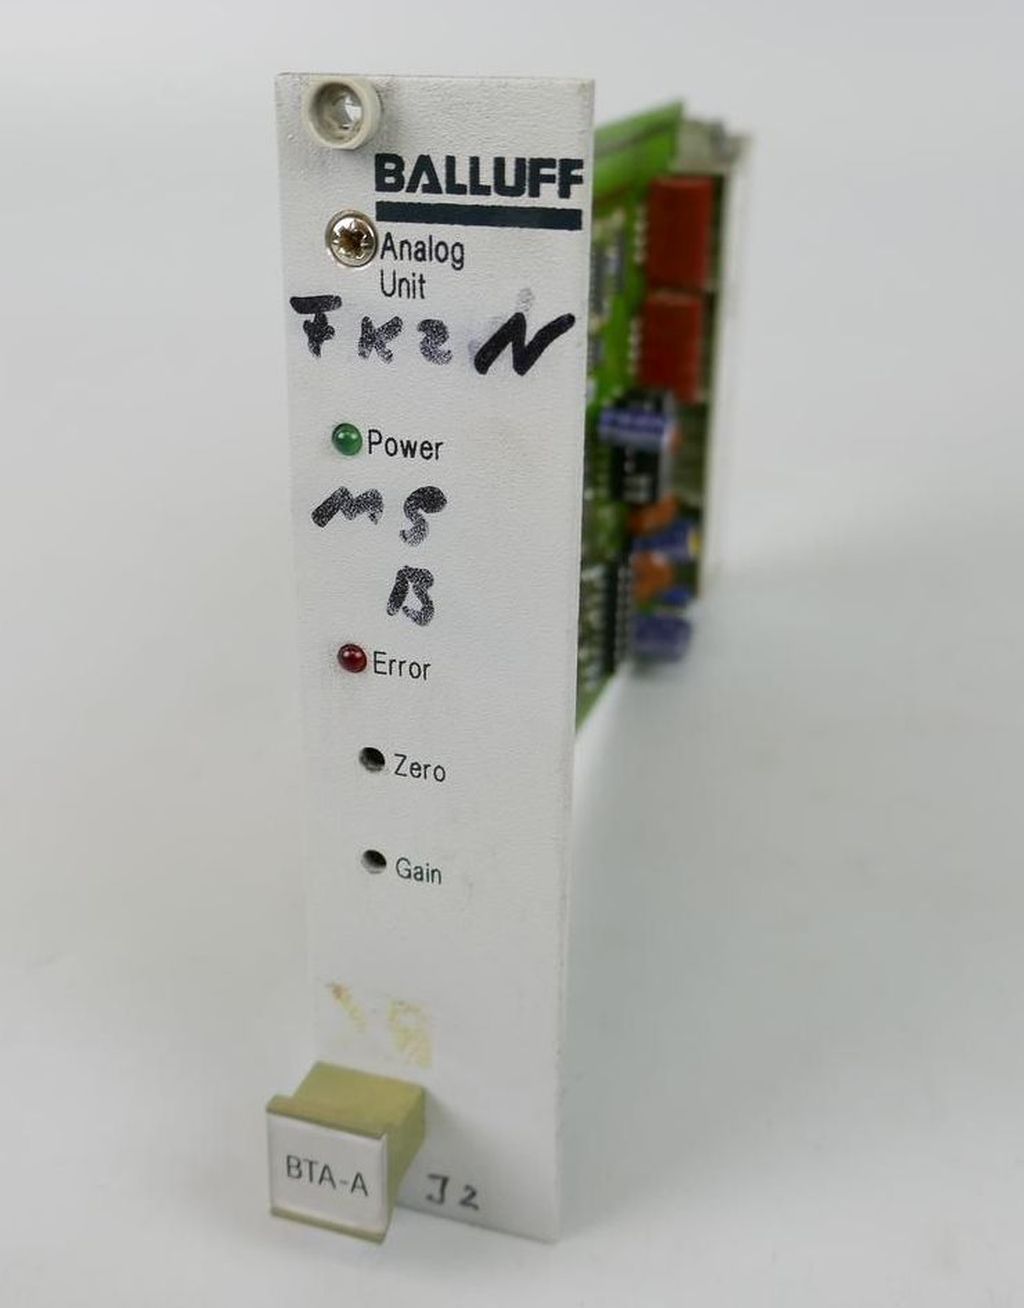 Analog Unit Balluff BTA-A11-0100-E beschriftet BTA-A11-0100-E,巴鲁夫